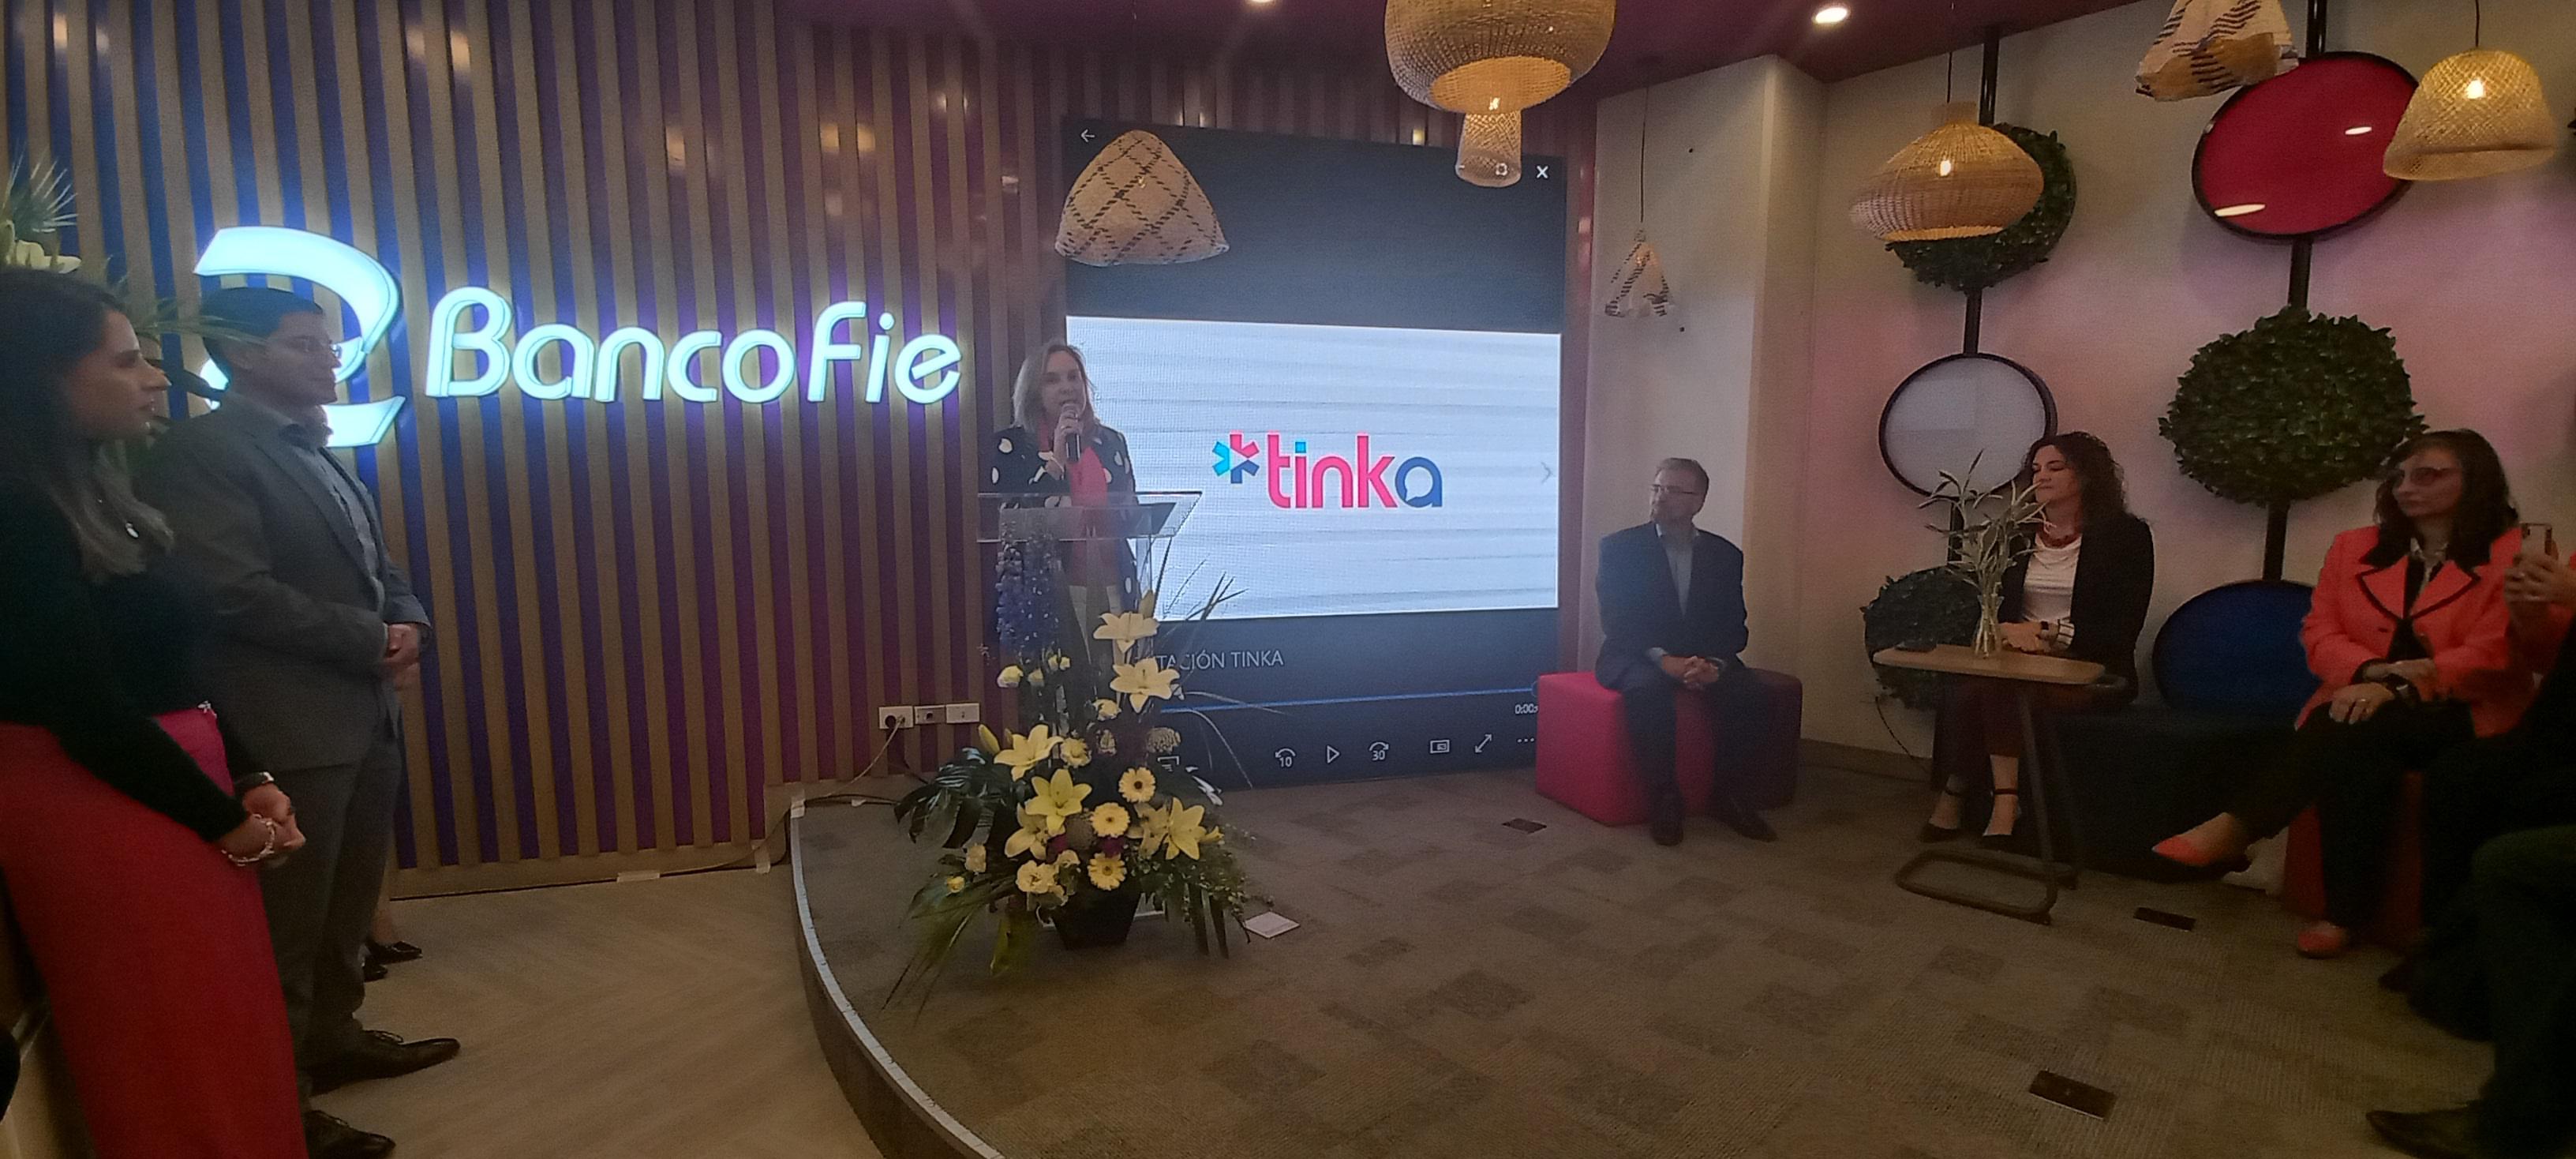 Banco FIE presentó la iniciativa “Tinka”, una innovadora forma de apoyar a emprendedoras y emprendedores con un enfoque digital